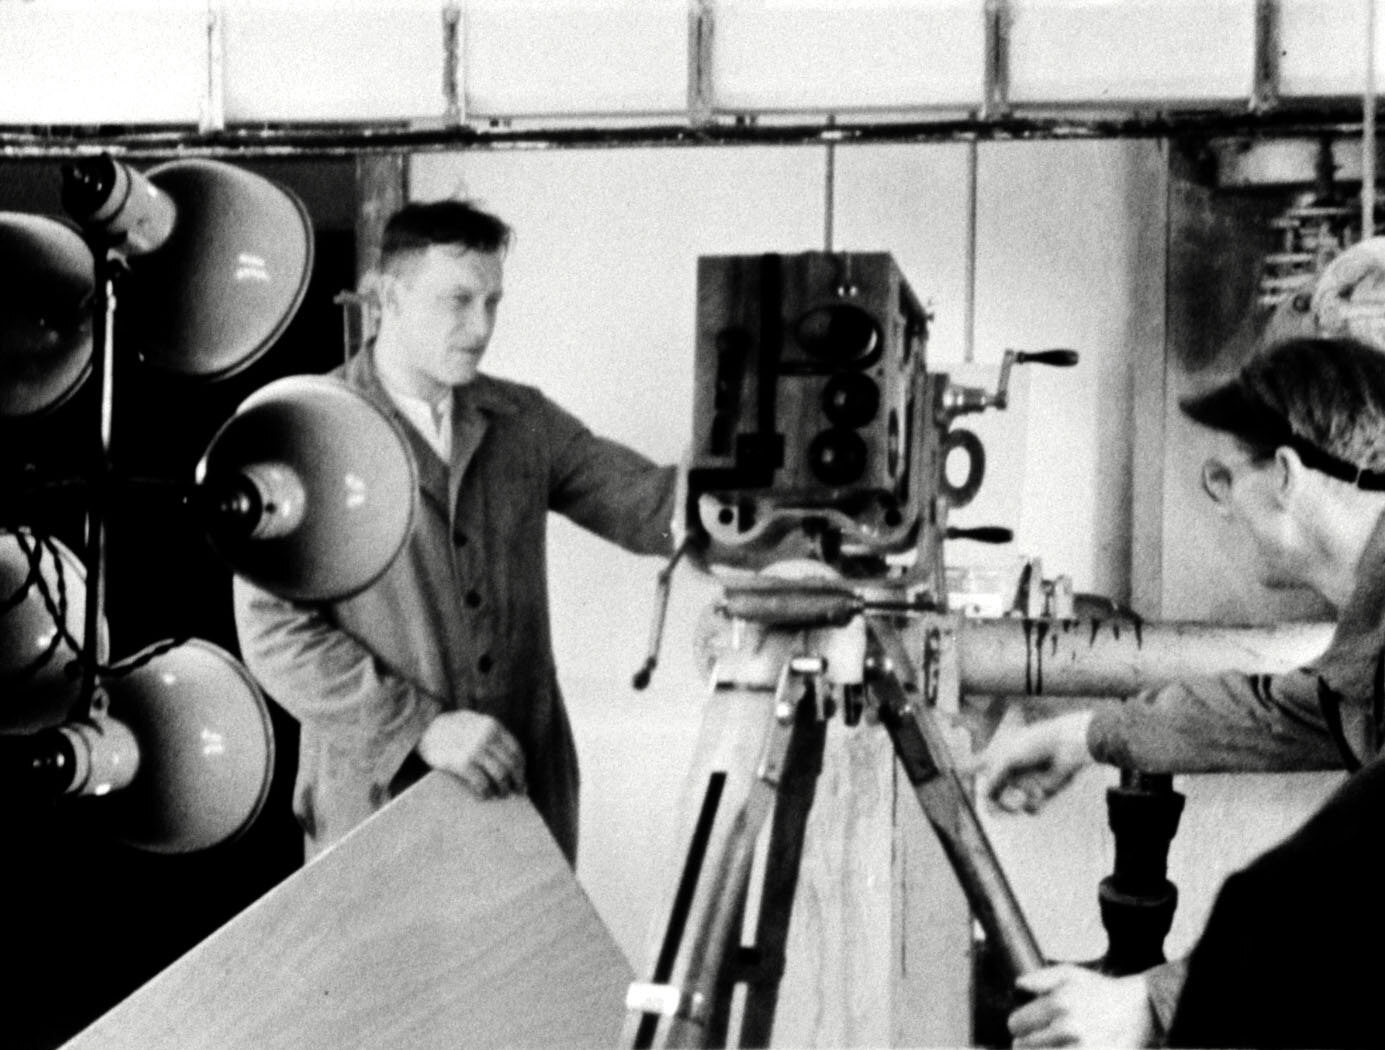 Schwarz-Weiß-Bild mit zwei Männern an einer Kamera